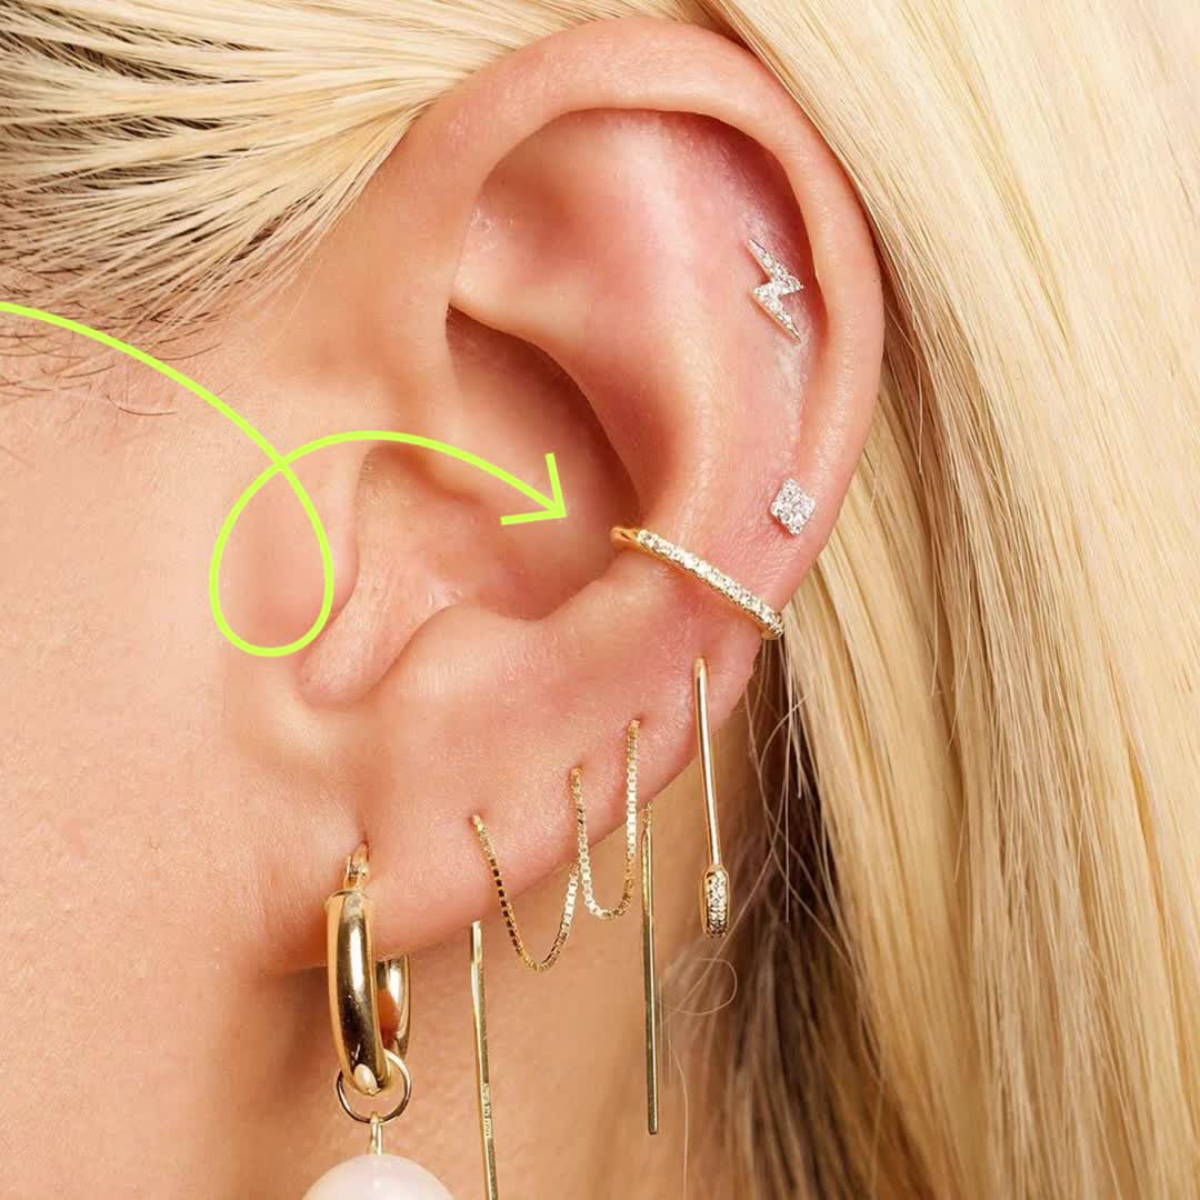 conch piercing earrings on woman